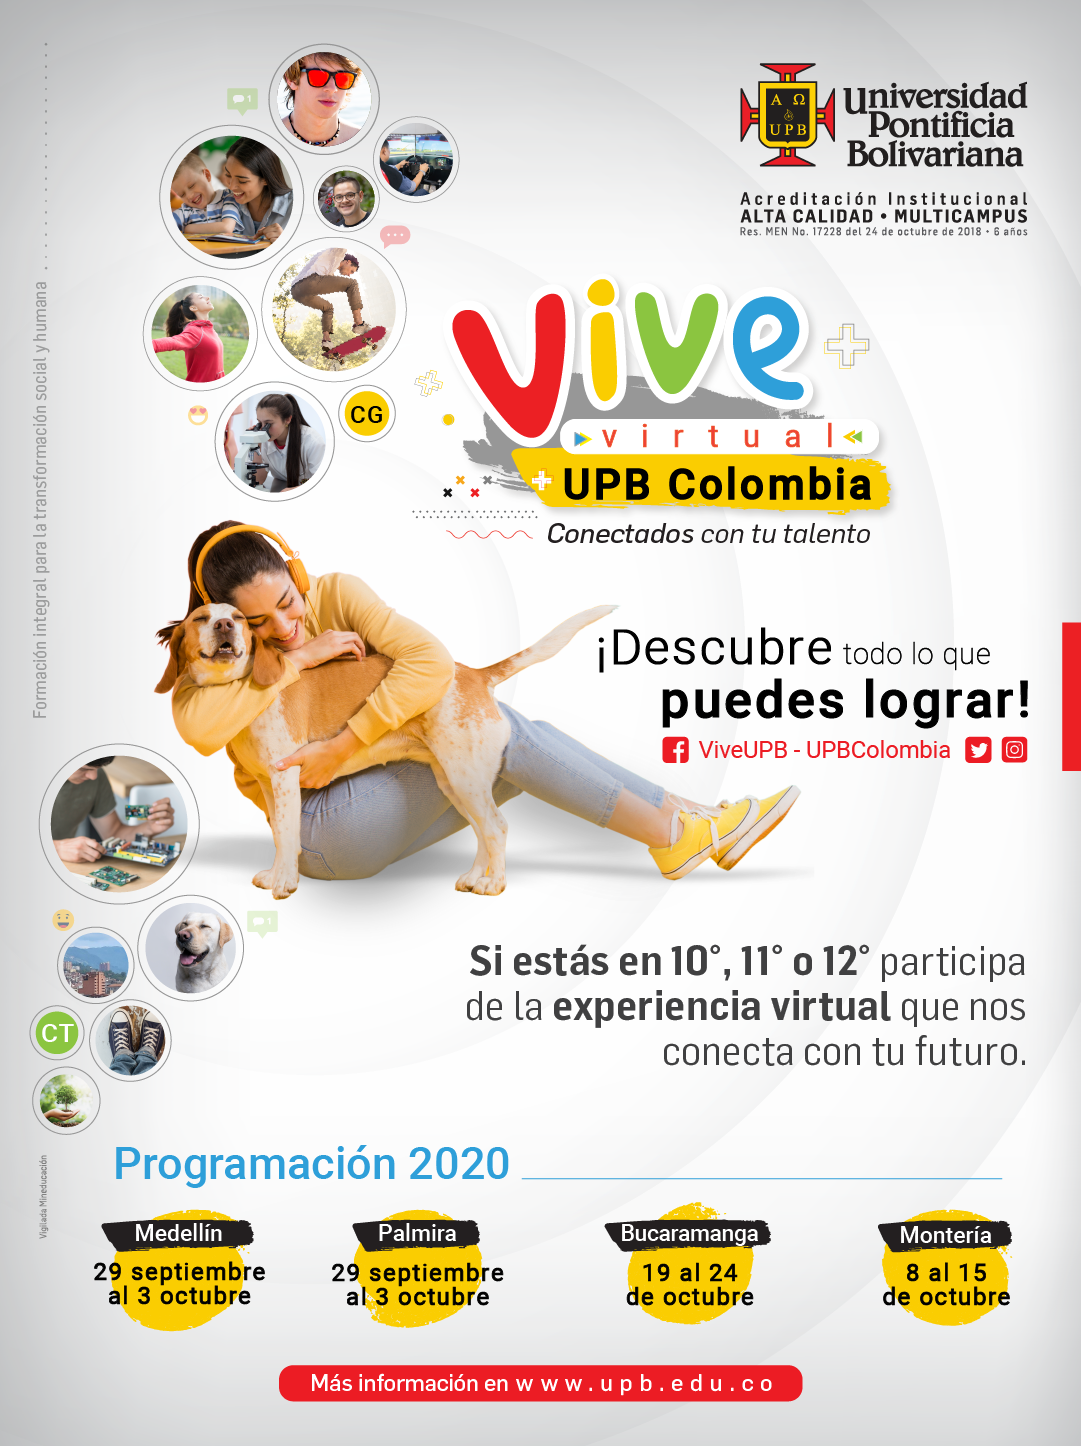 Vive virtual UPB Medellin